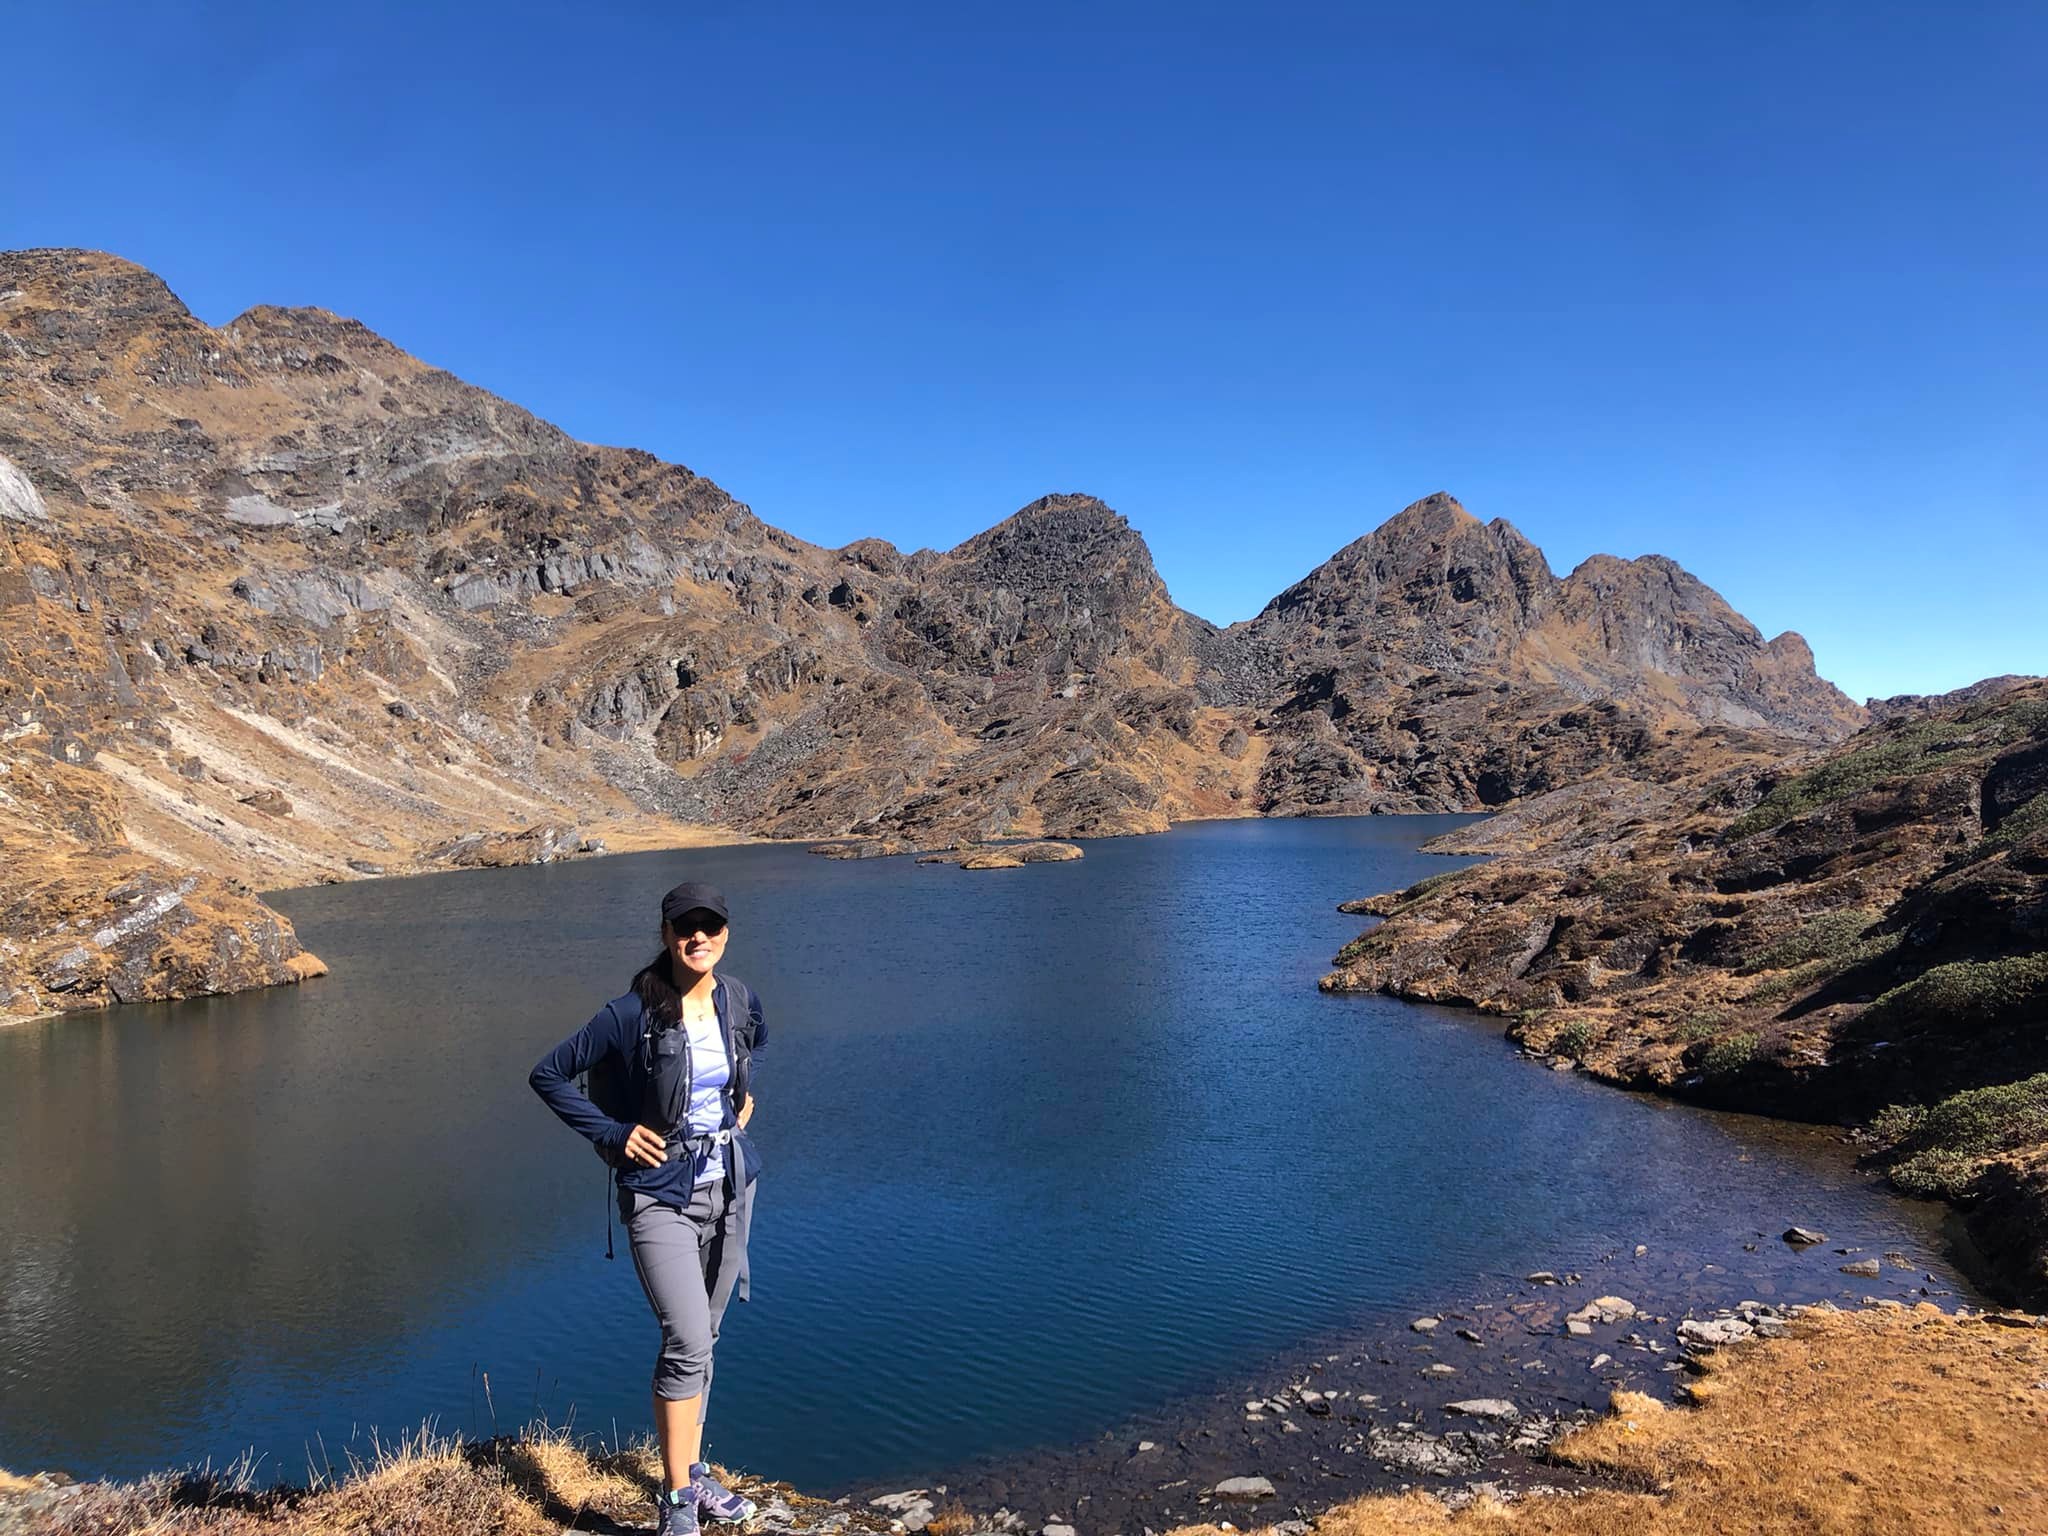 Tashi Chozom stands on the bank of a mountain lake, in which the deep blue sky is reflected,  surrounded by rugged cliffs.Tashi Chozom steht am Ufer eines Gebirgssees, in dem sich der tiefblaue Himmel spiegelt, um geben von schroffen Felsen.